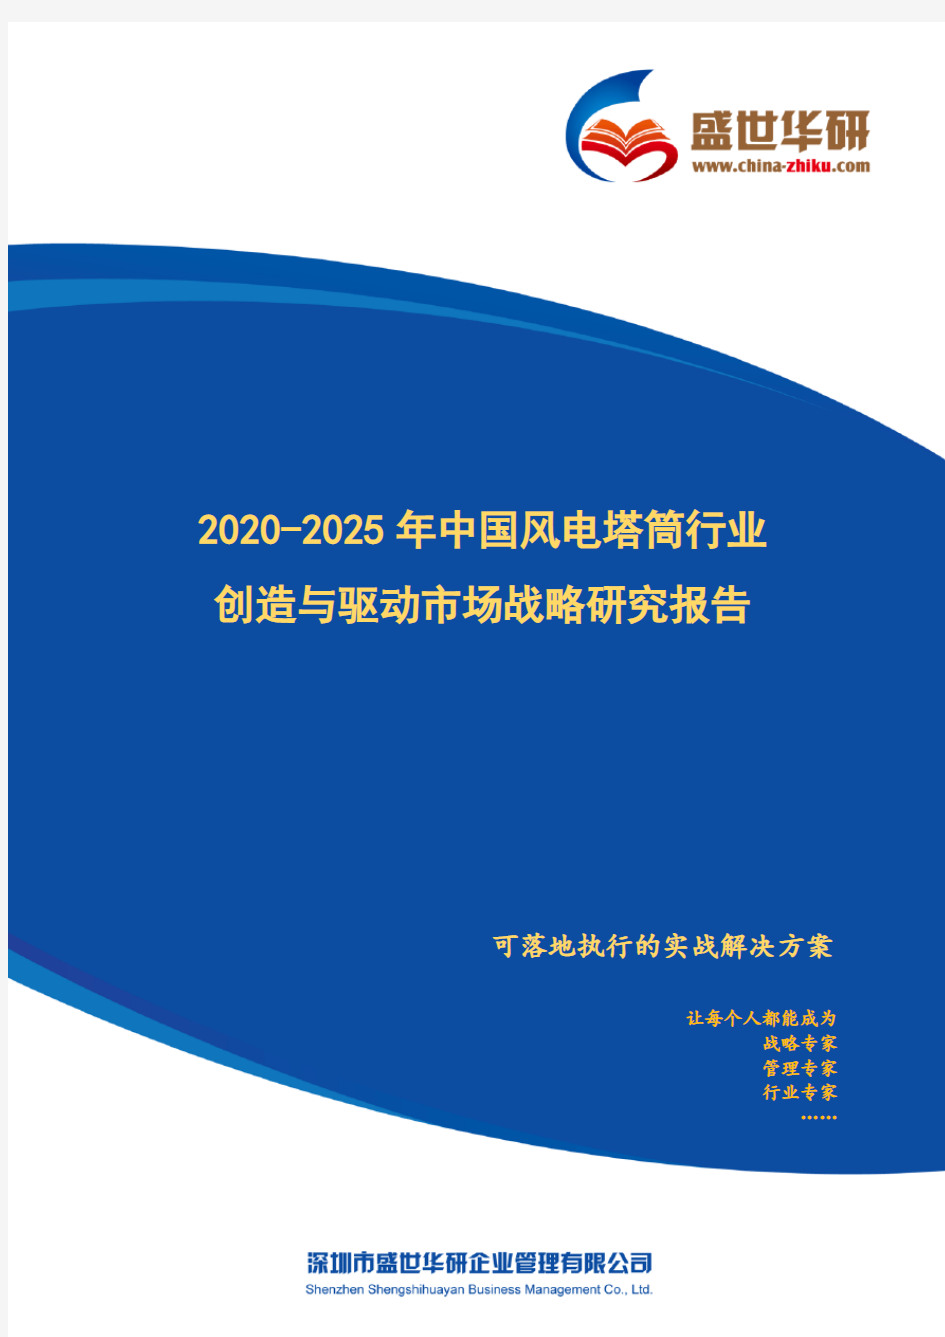 【完整版】2020-2025年中国风电塔筒行业创造与驱动市场战略研究报告